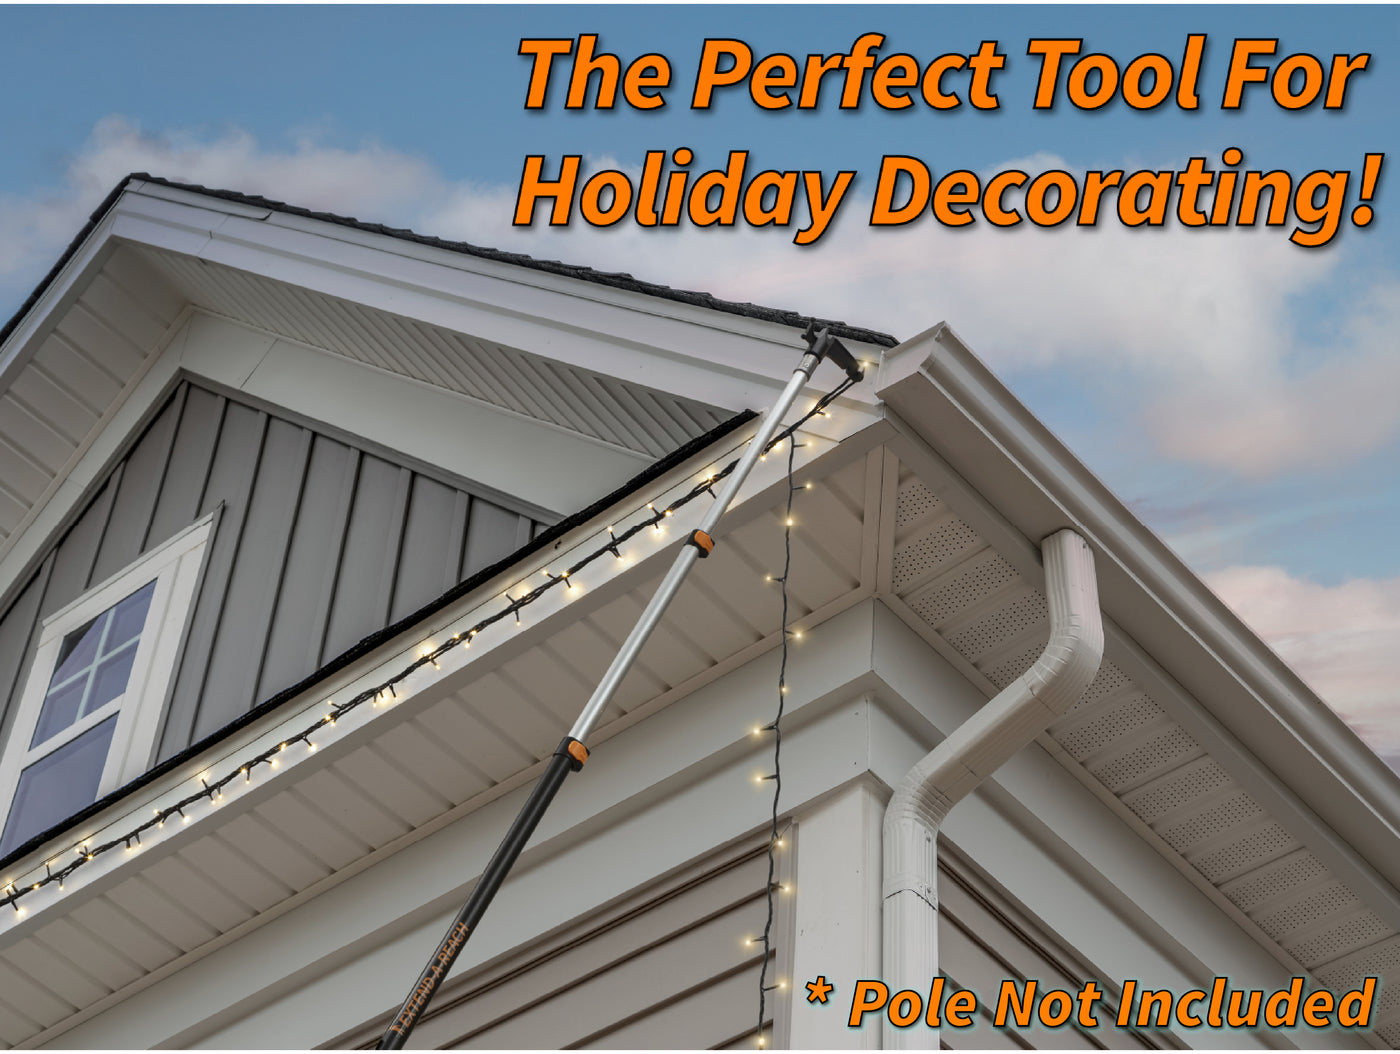 Utility Hook Christmas Light Hanger Tool Attachment – Extend-A-Reach